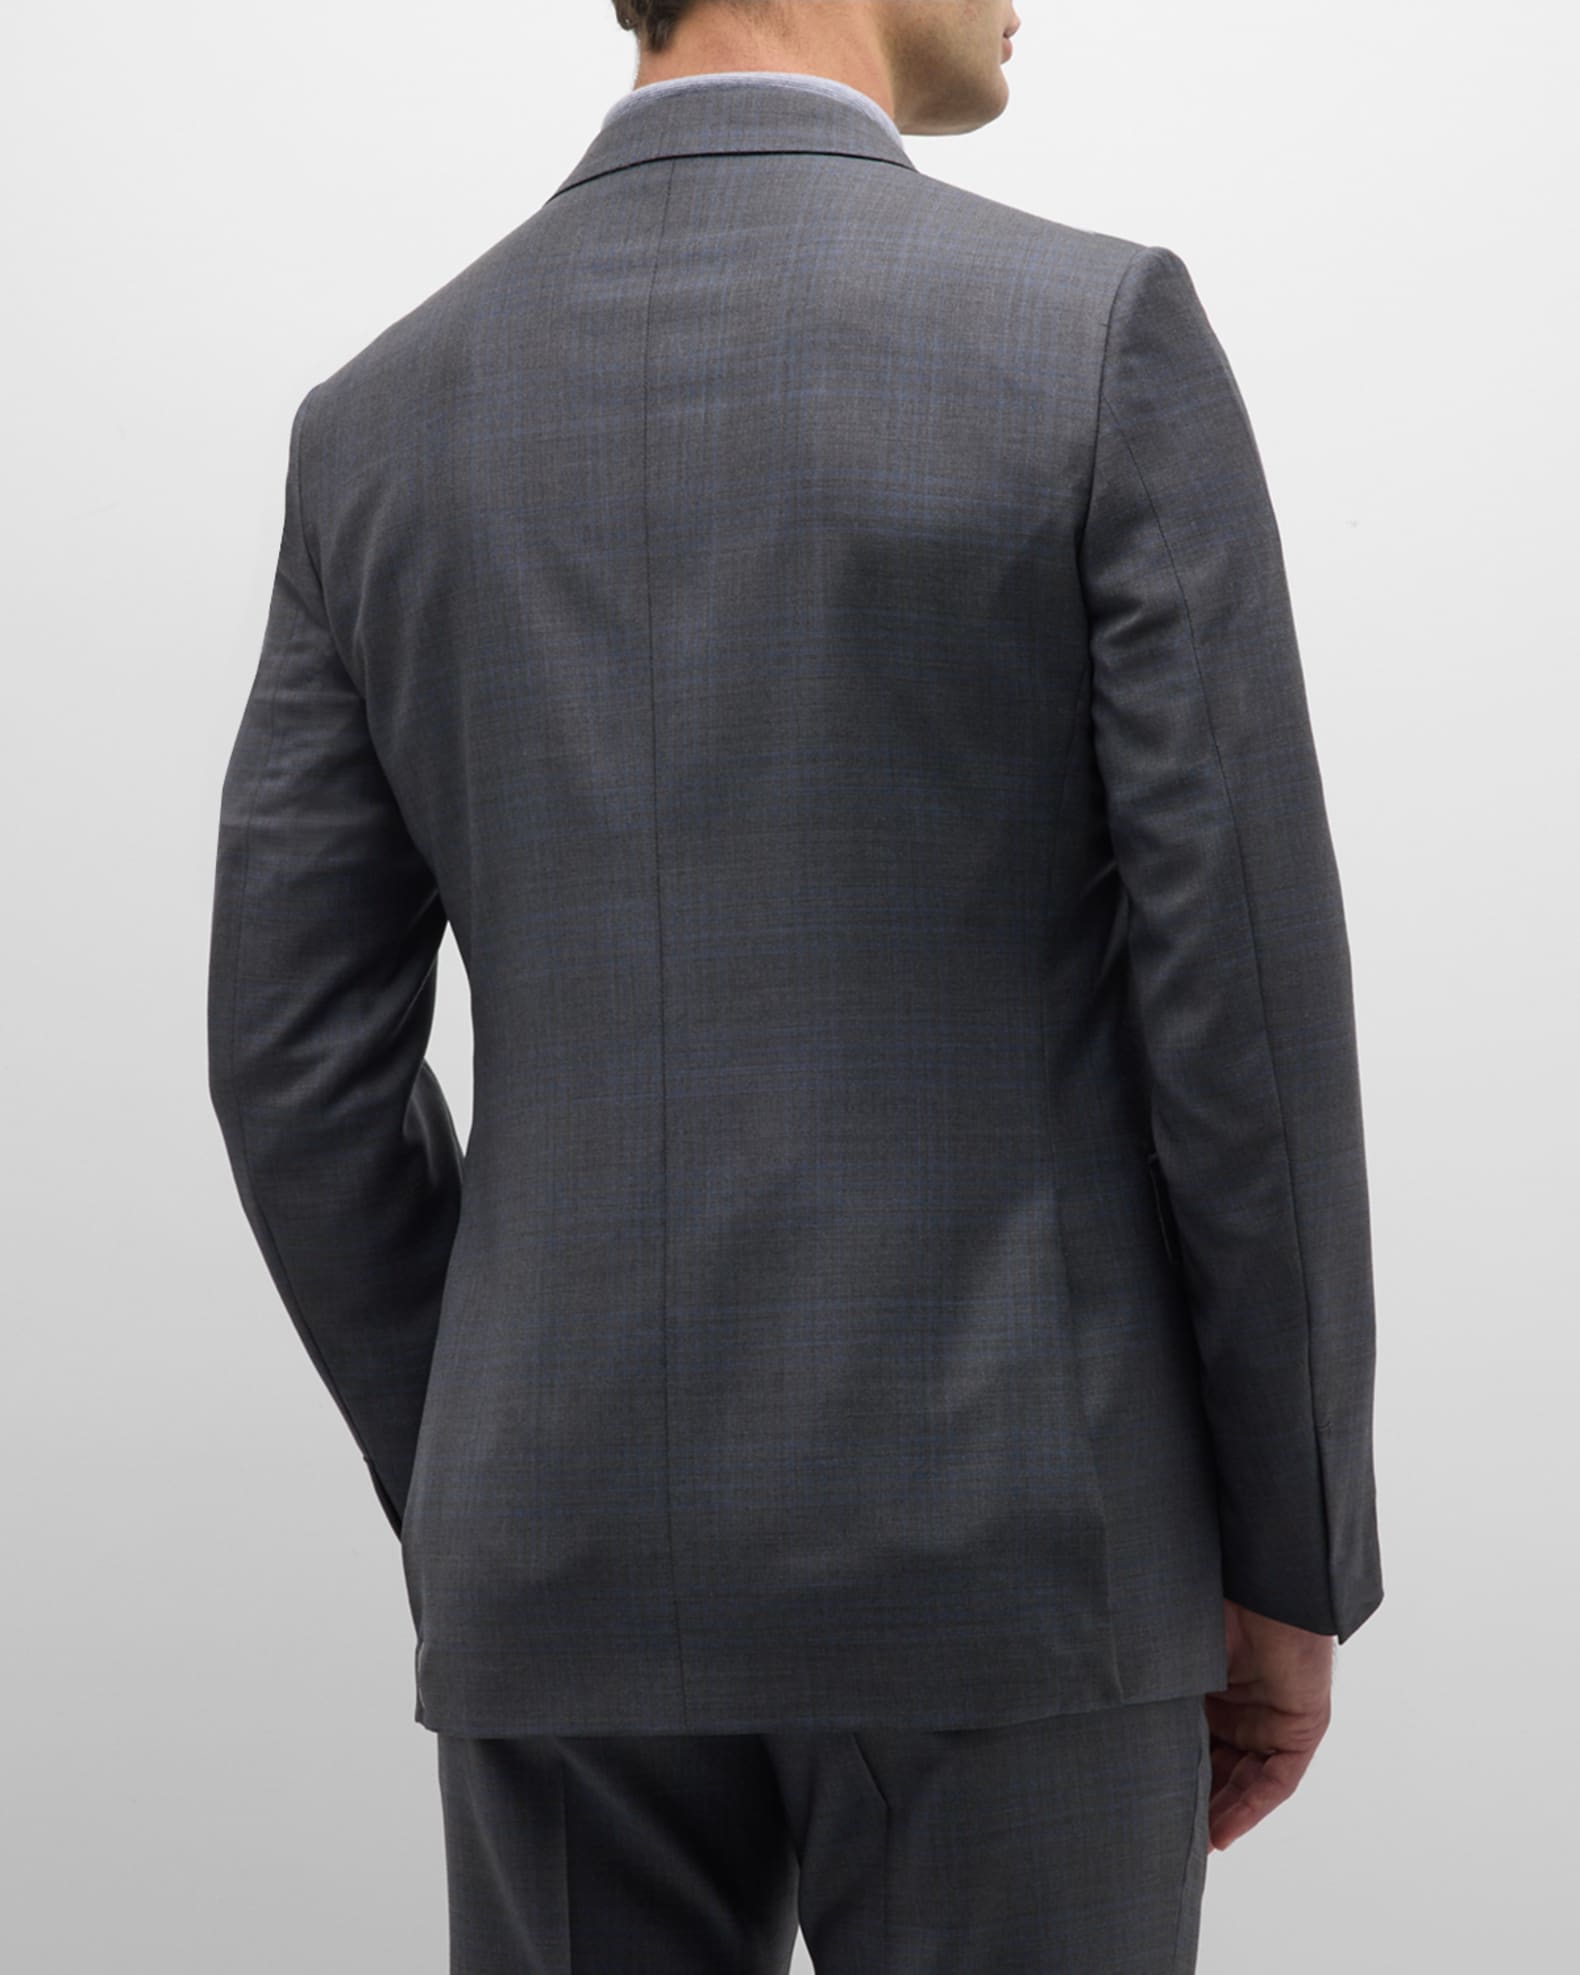 ZEGNA Men's Two-Tone Plaid Wool Suit | Neiman Marcus